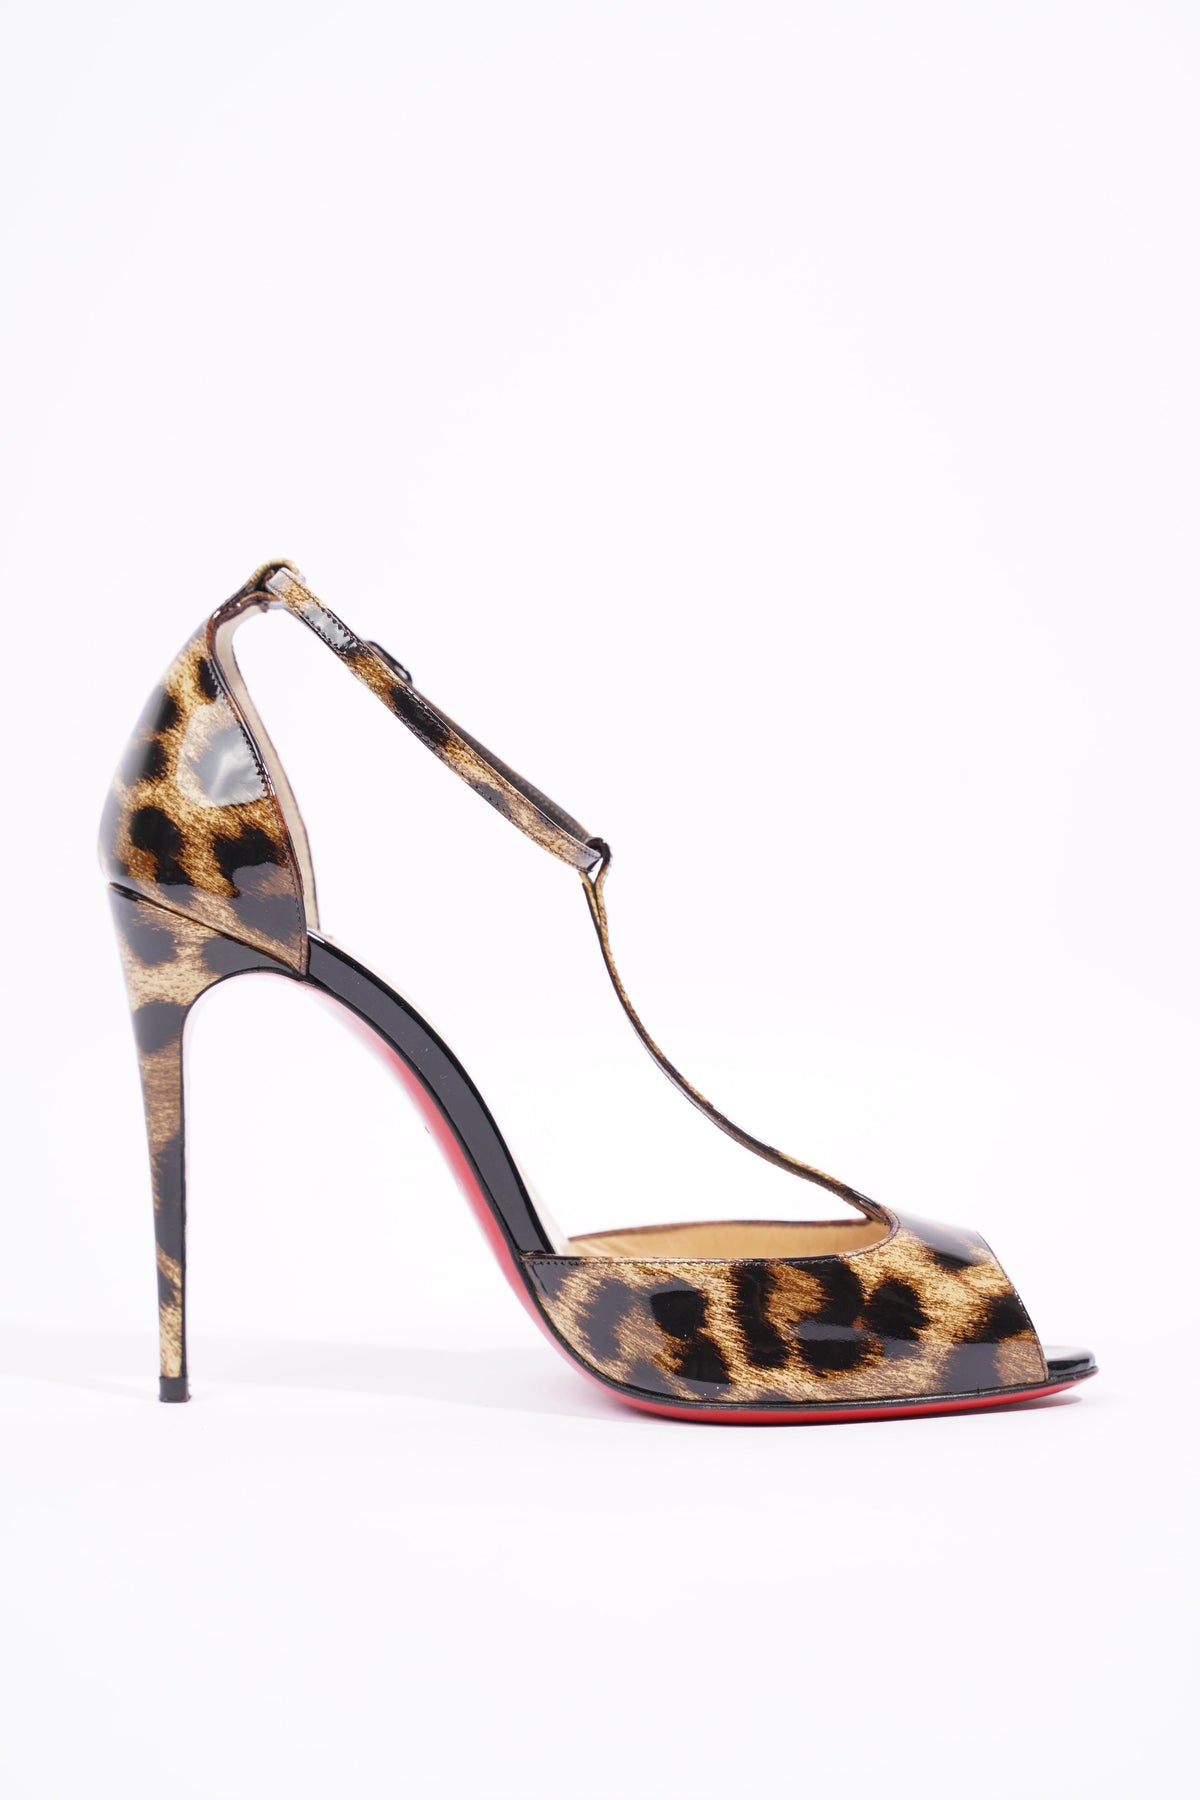 Leopard Christian Louboutins, Louis Vuitton  Louis vuitton shoes heels,  Christian louboutin, Louis vuitton shoes